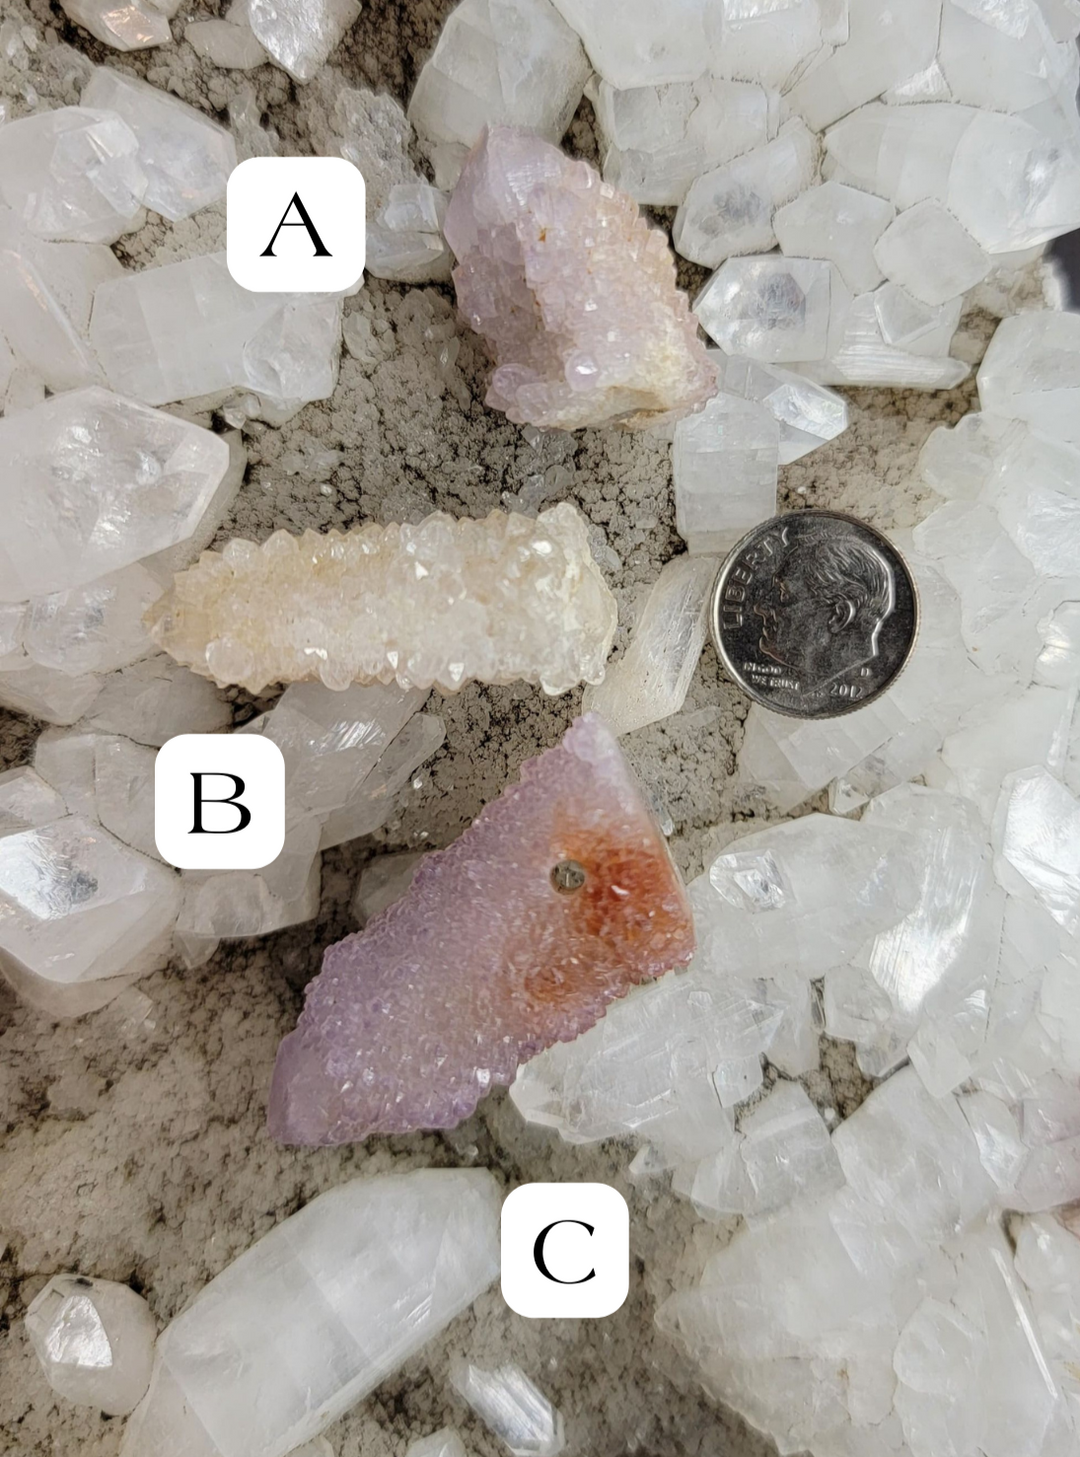 Spirit Quartz crystals